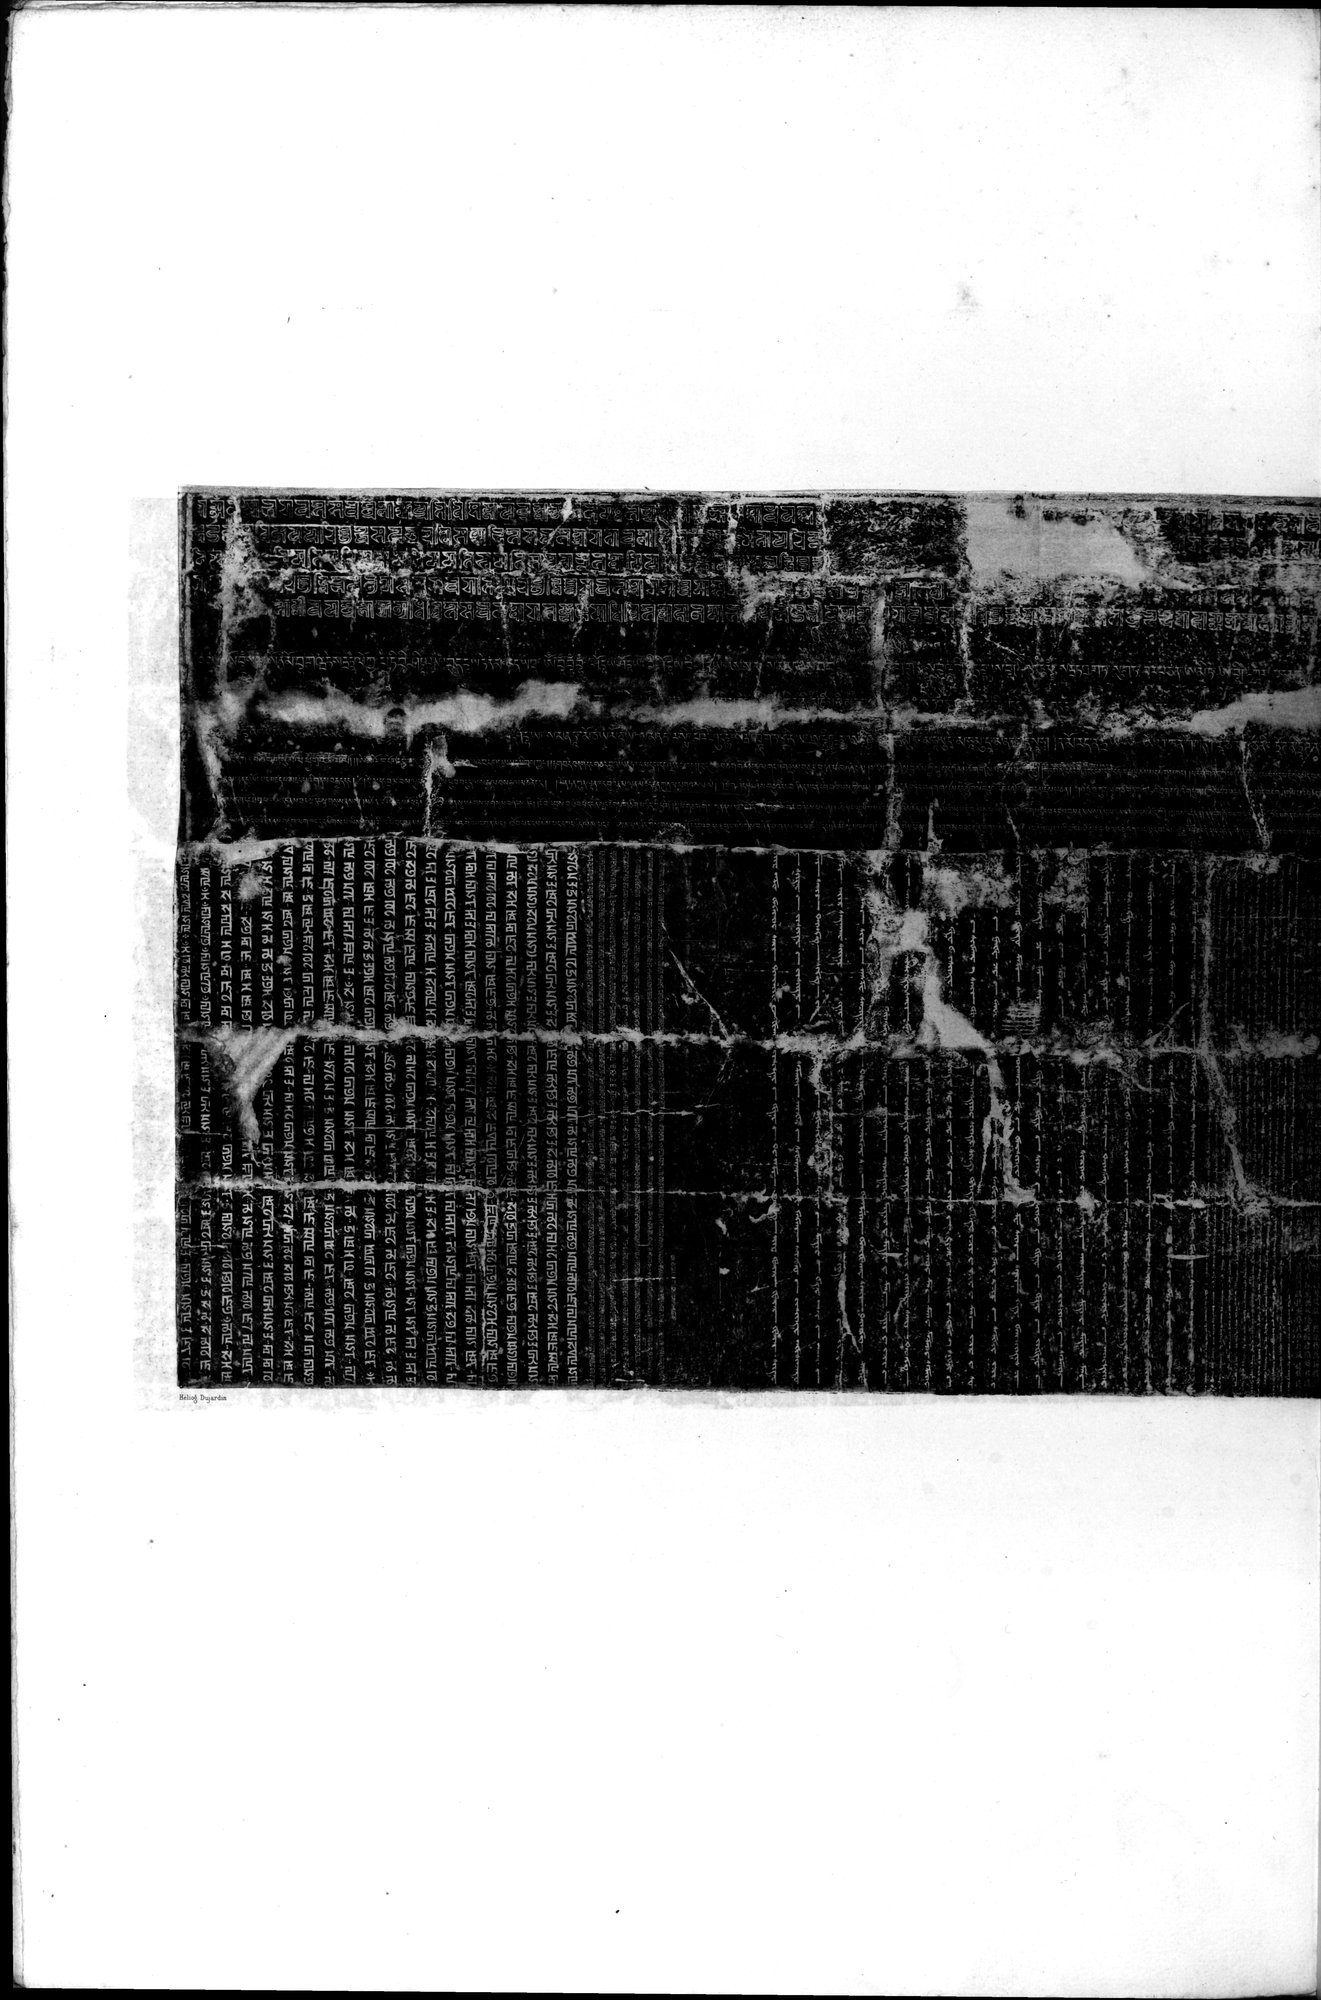 Documente de l'Époque Mongole des XIIIe et XIVe Siècle : vol.1 / Page 18 (Grayscale High Resolution Image)